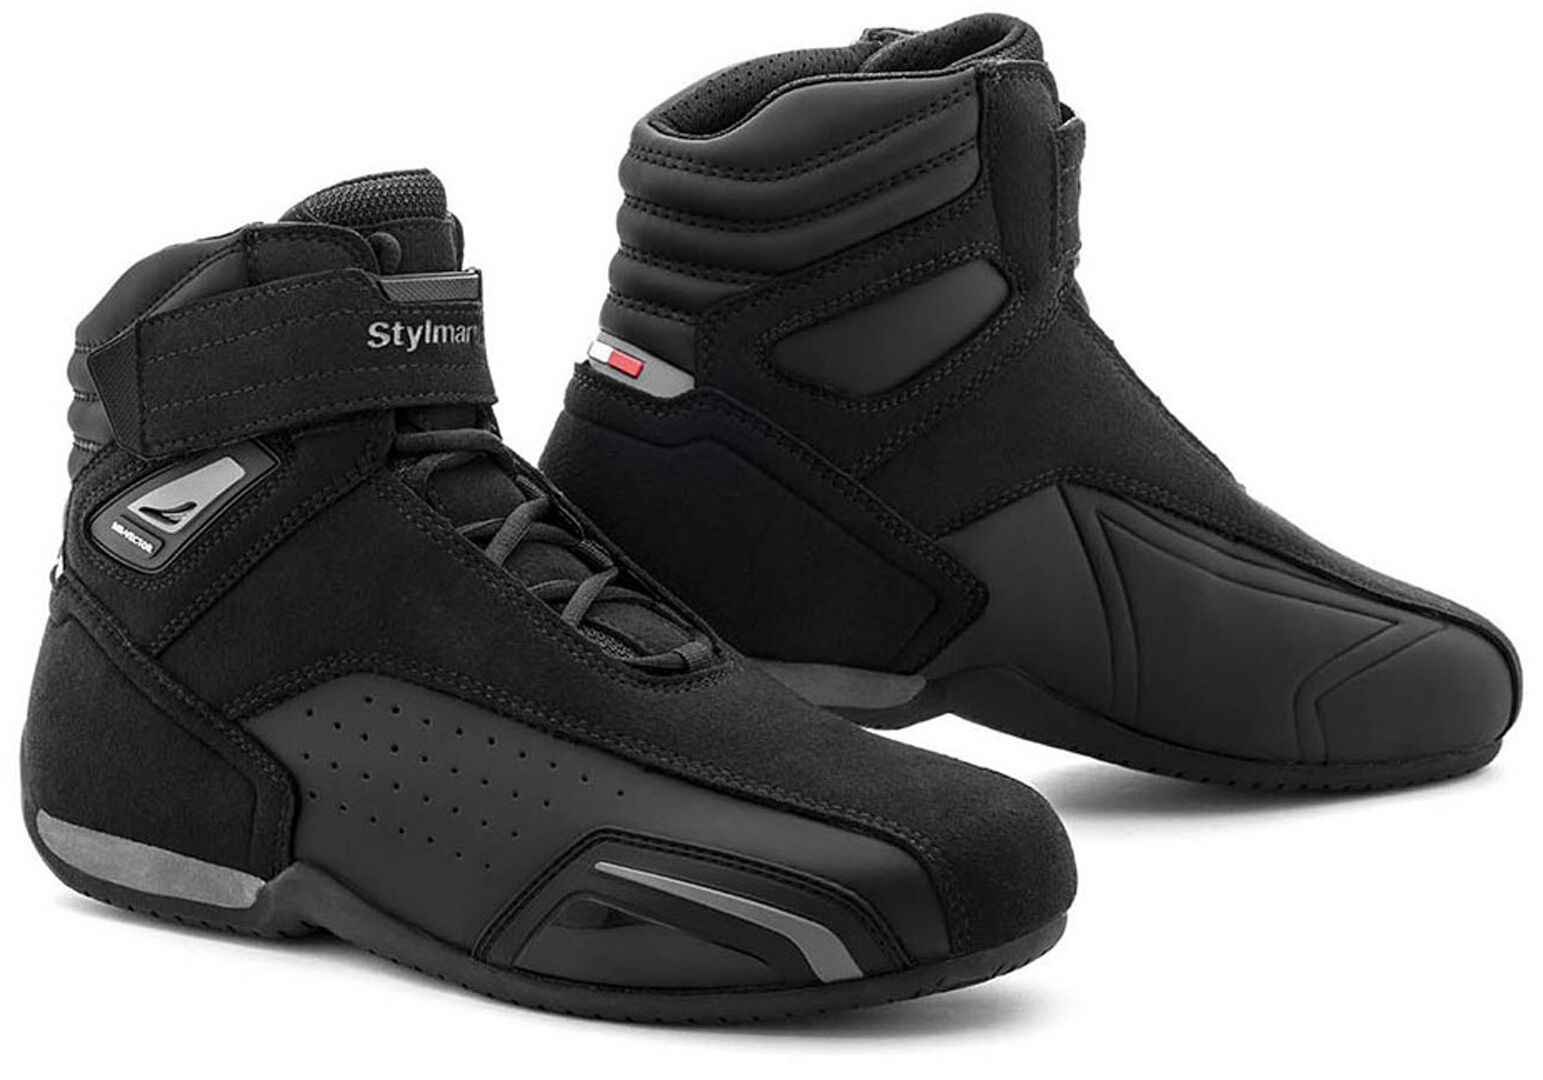 Stylmartin Vector Air Zapatos de moto - Negro (45)